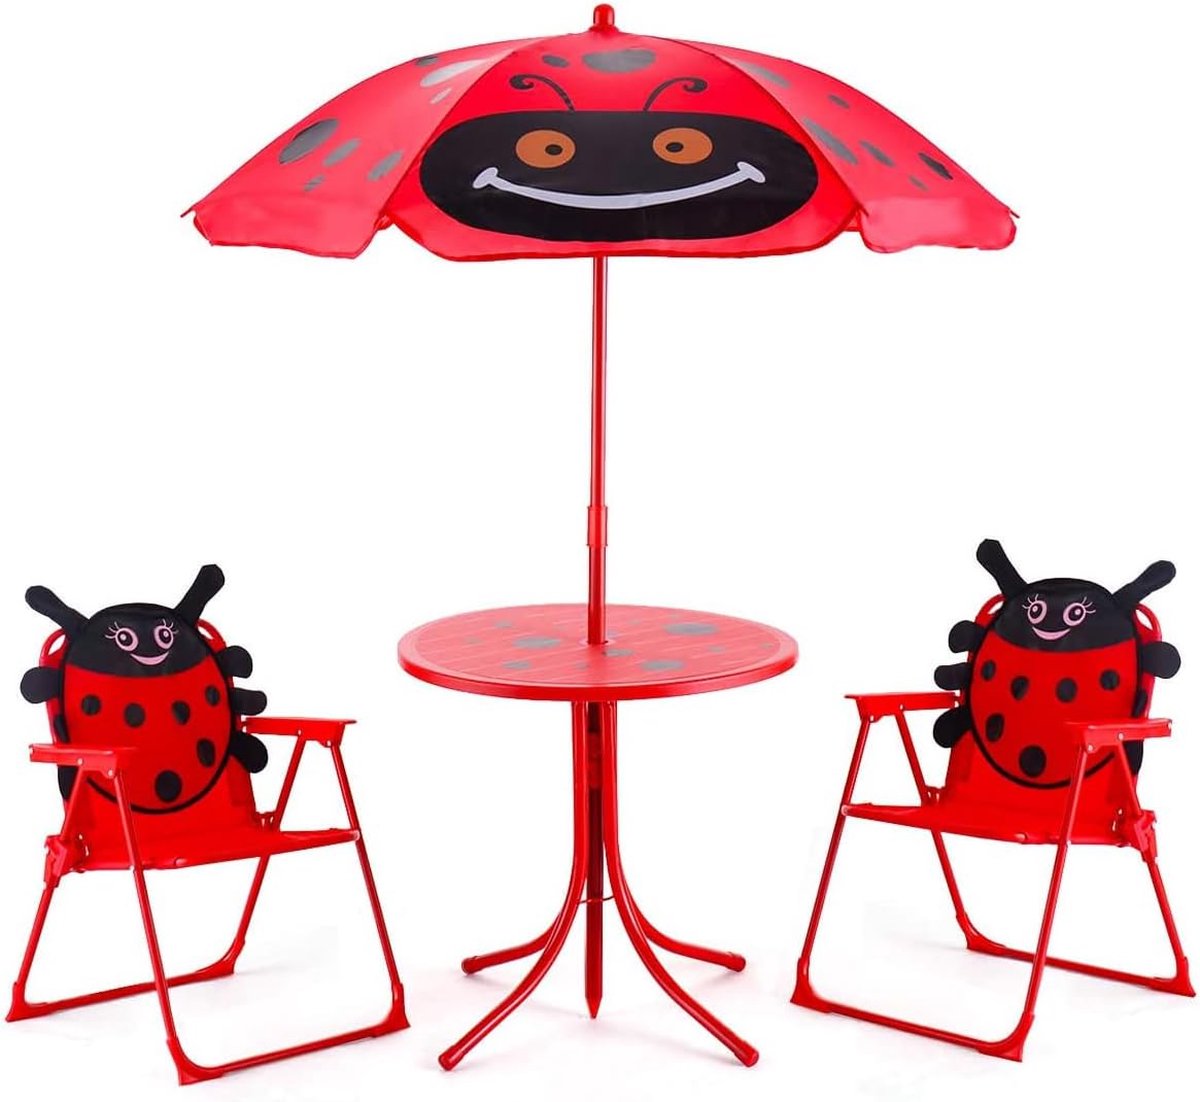 COSTWAY Zitgroep zitgarnituur voor kinderen tuinset kindermeubel kindertafel incl. parasol + 2 kinderstoelen inklapbaar rood